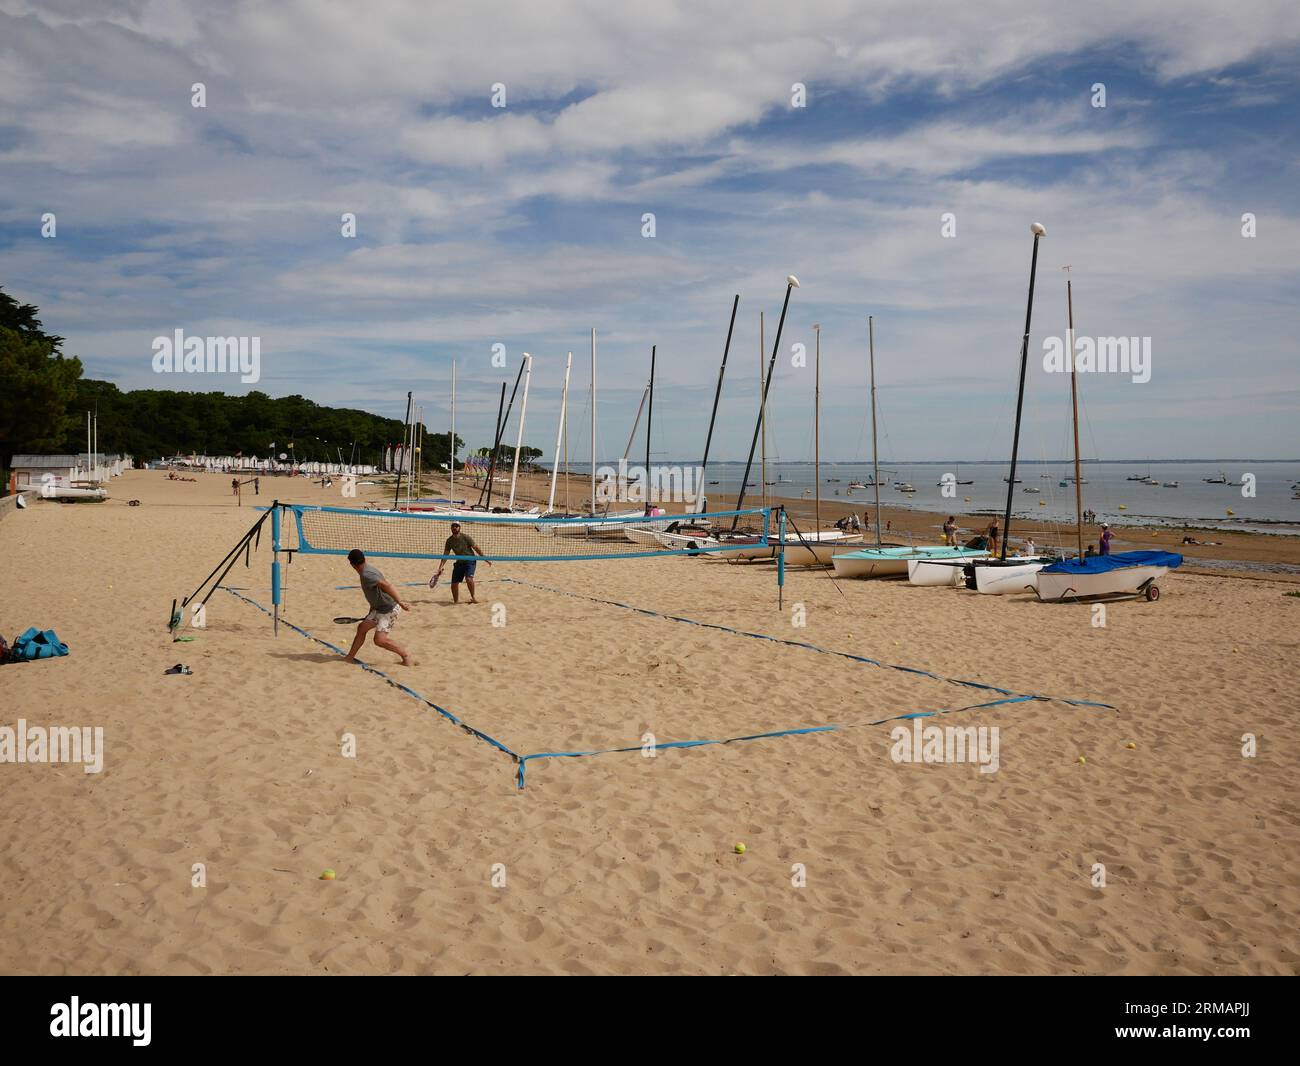 Two men play beach volleyball, Plage de l'Anse Rouge, Ile De Noirmoutier, Vendee, France Stock Photo